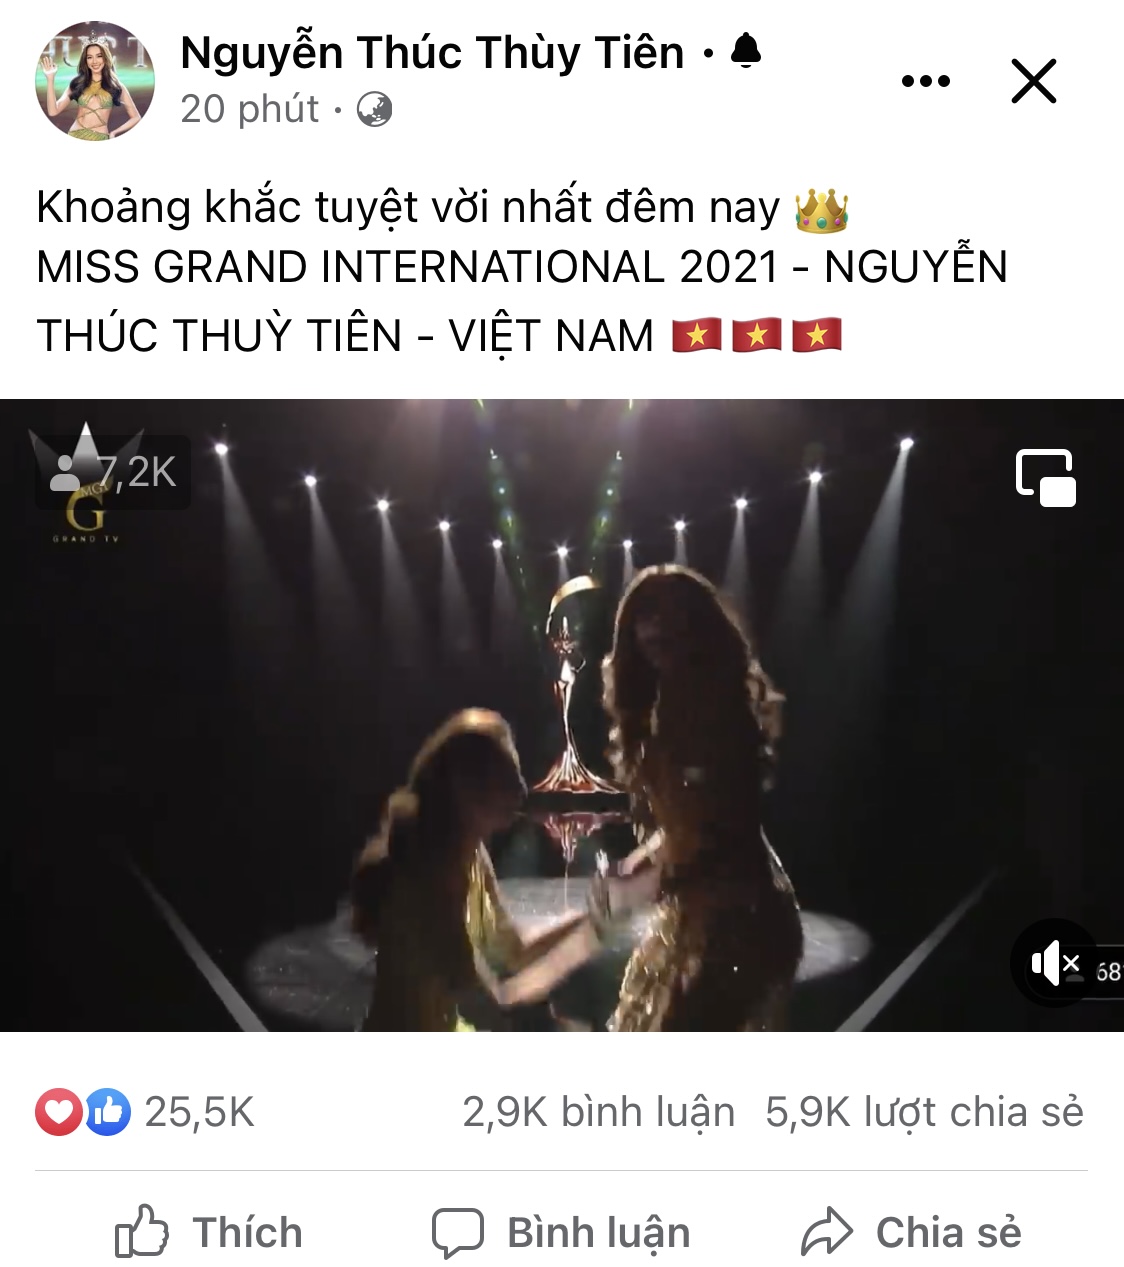 Thuỳ Tiên đã có chia sẻ đầu tiên sau khi đăng quang Miss Grand 2021, nói 1 câu mà rõ hết nỗi lòng! - Ảnh 3.